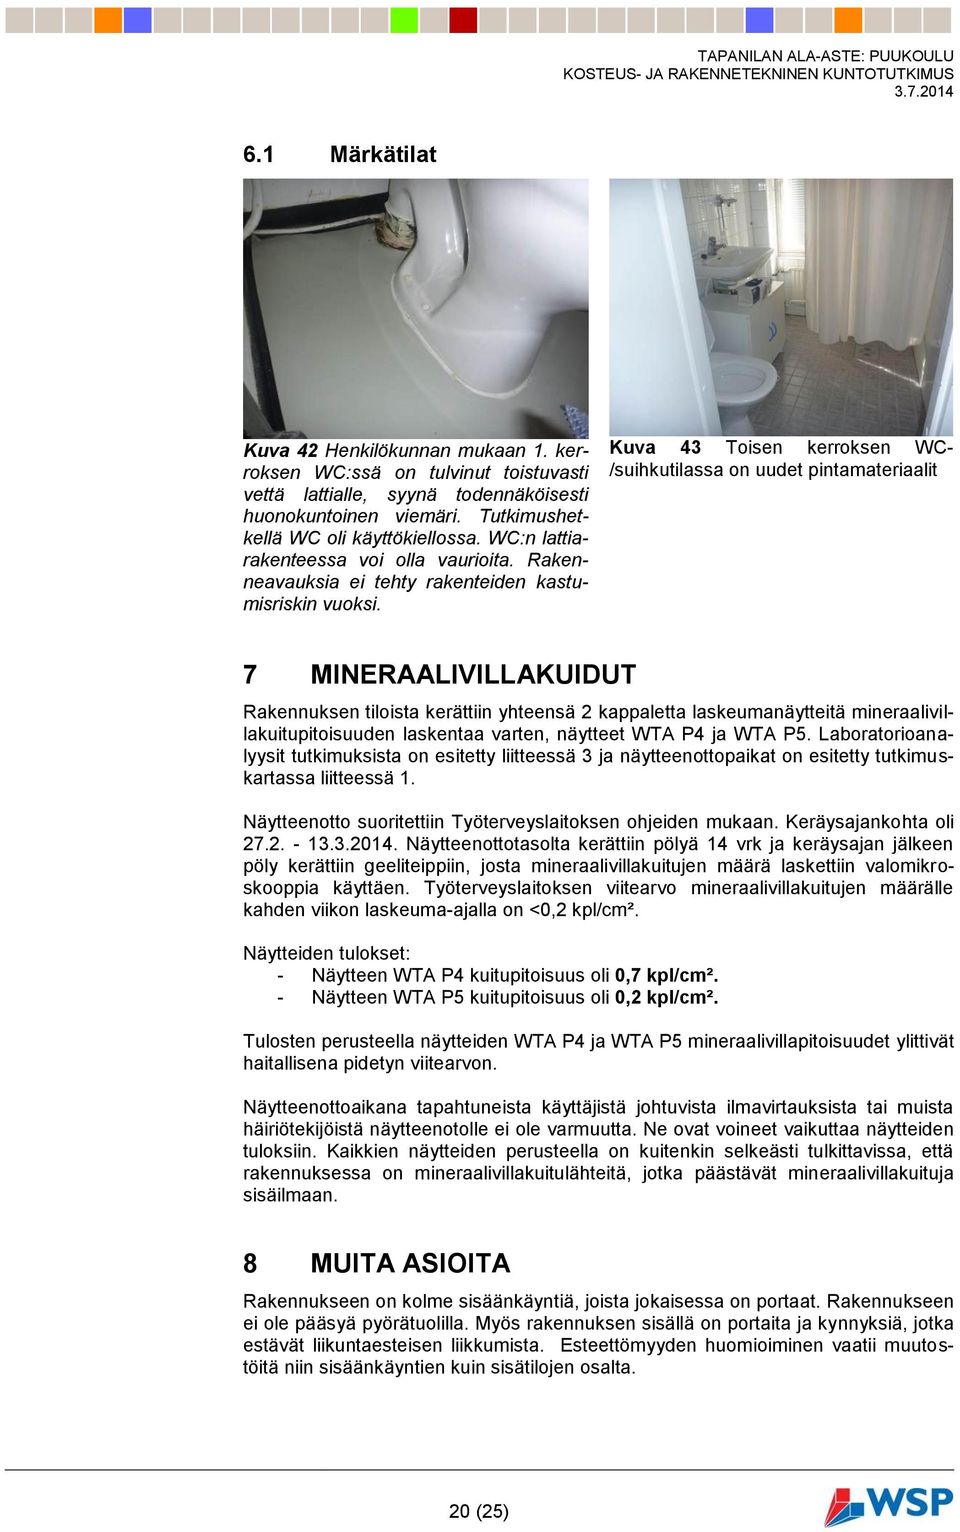 Kuva 43 Toisen kerroksen WC- /suihkutilassa on uudet pintamateriaalit 7 MINERAALIVILLAKUIDUT Rakennuksen tiloista kerättiin yhteensä 2 kappaletta laskeumanäytteitä mineraalivillakuitupitoisuuden